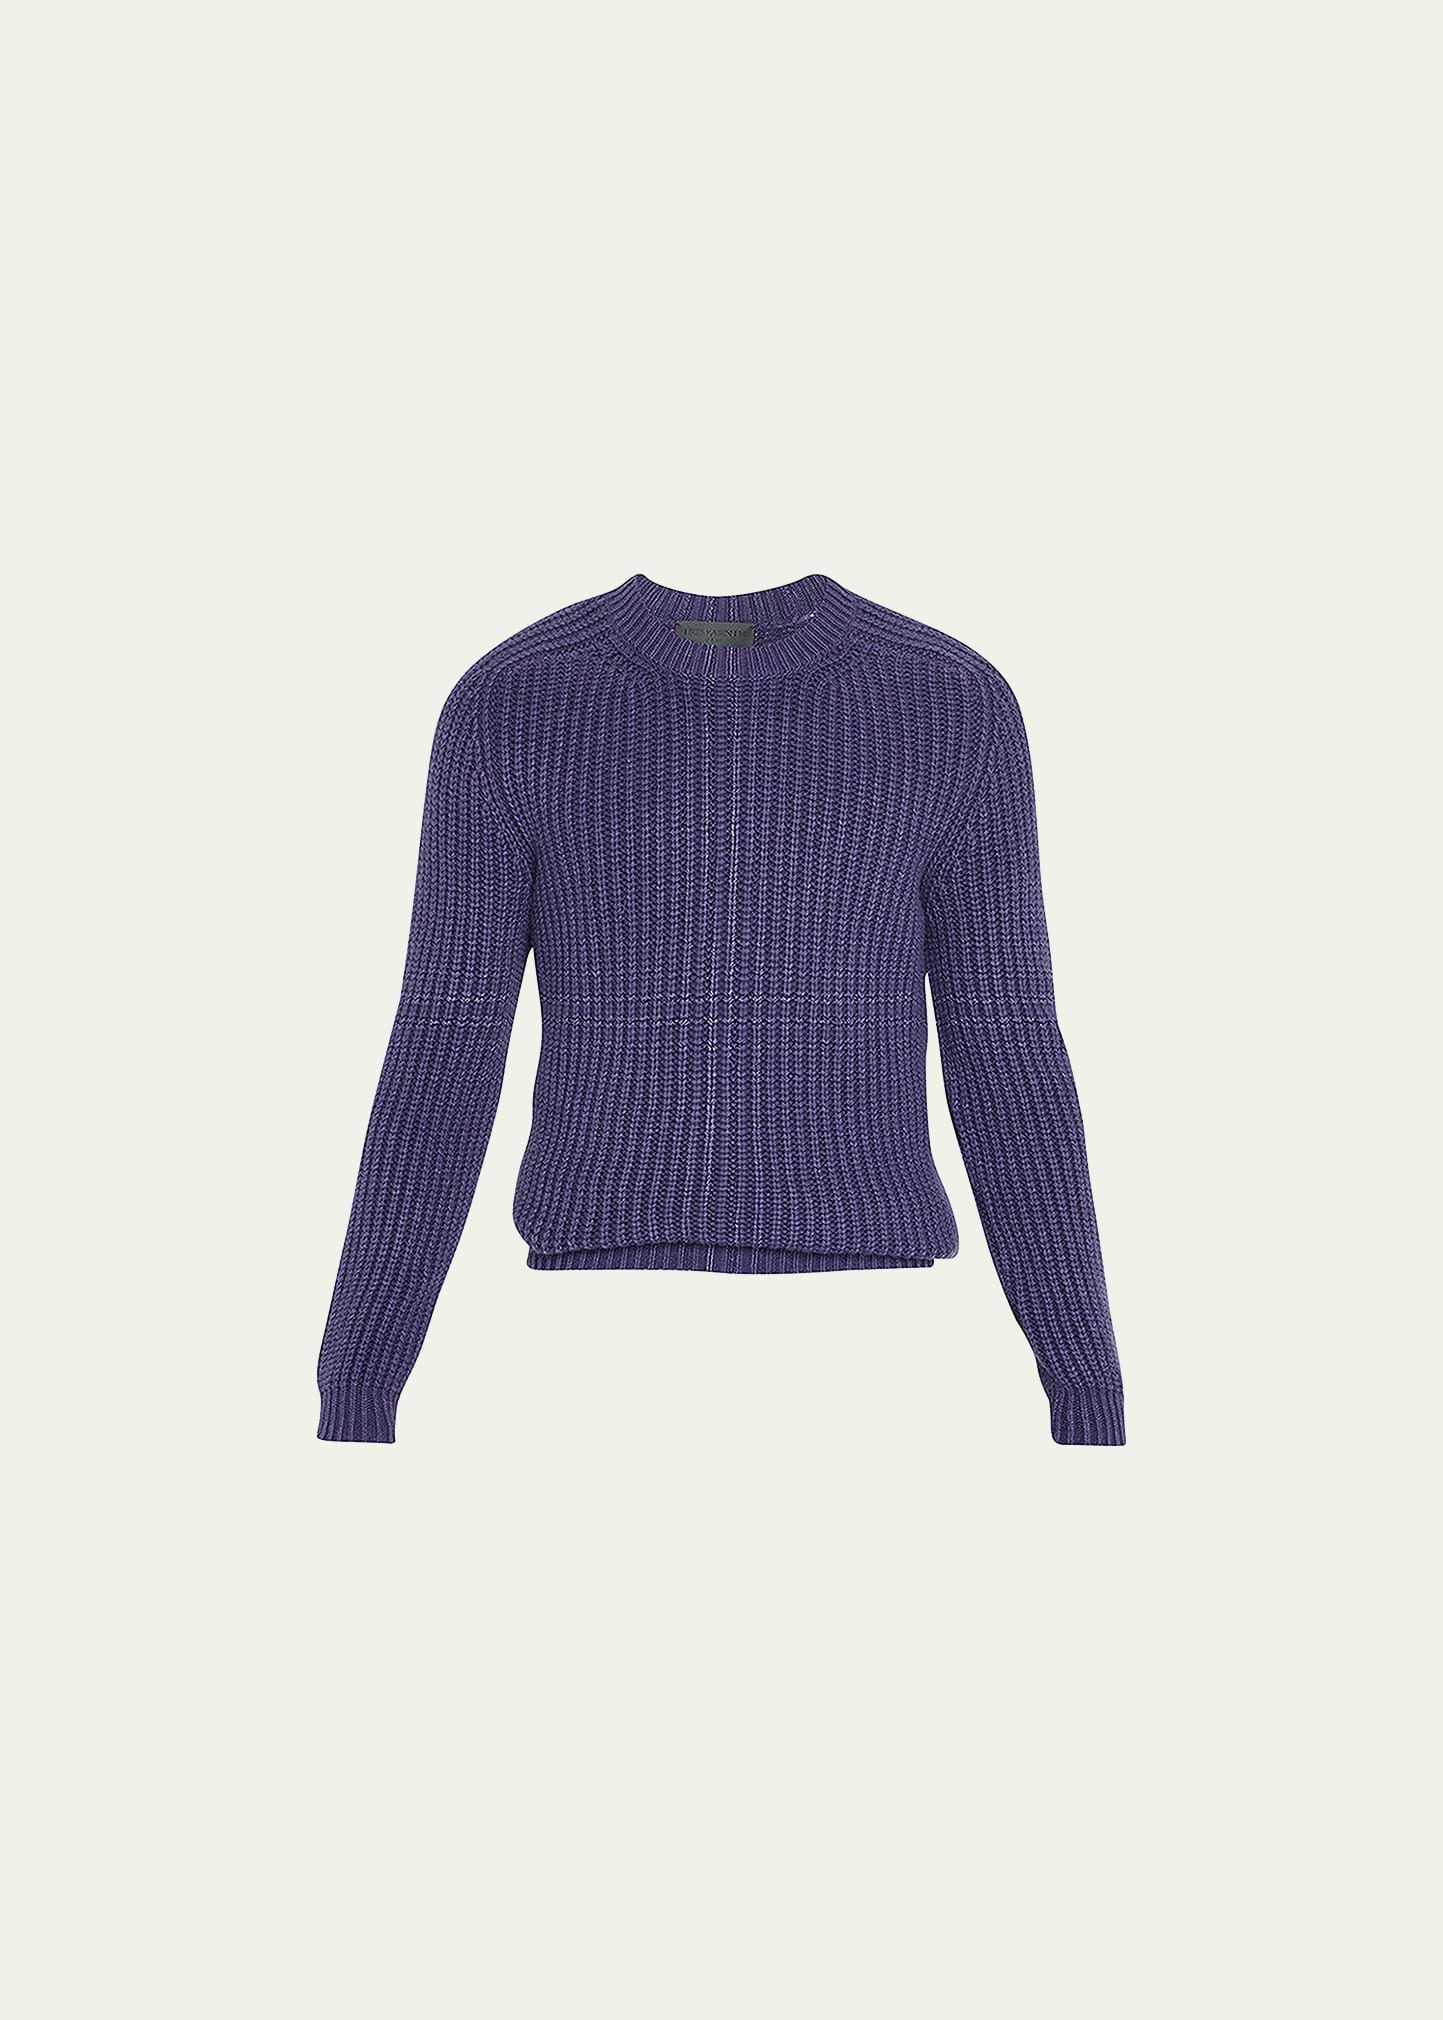 Iris Von Arnim Men's Rib-Knit Cashmere Crewneck Sweater